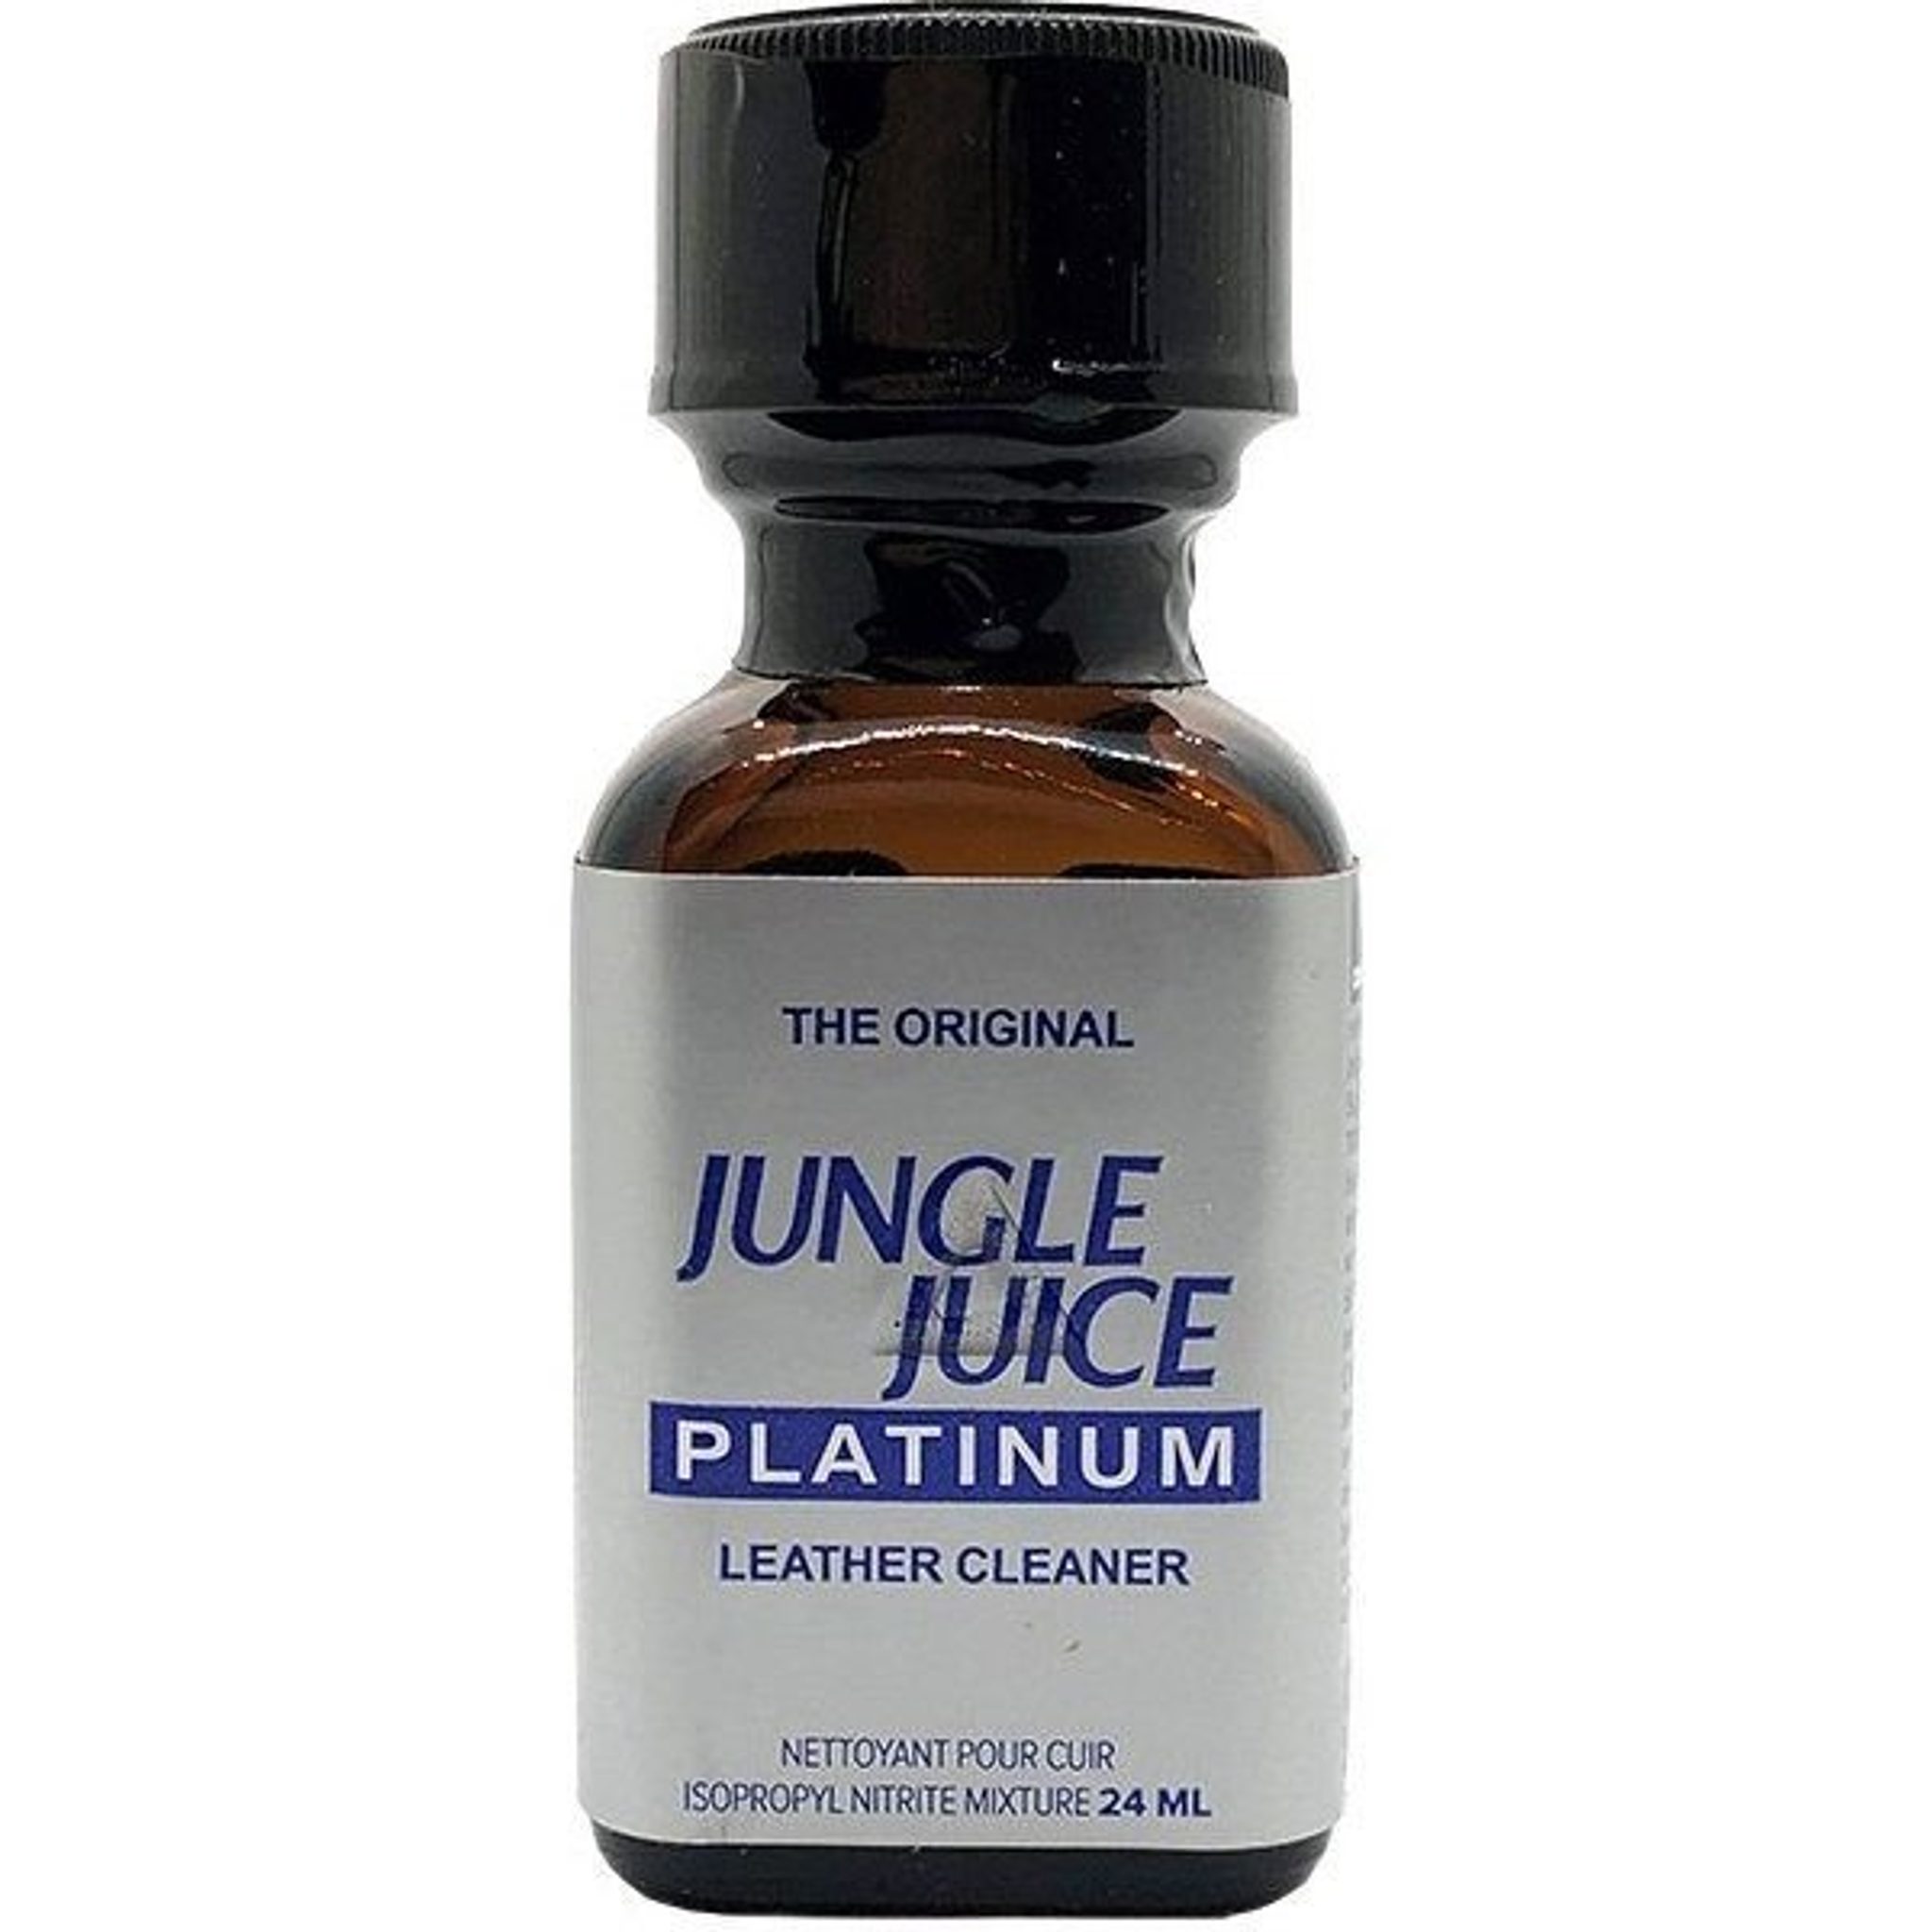 Jungle Juice Premium 24ml